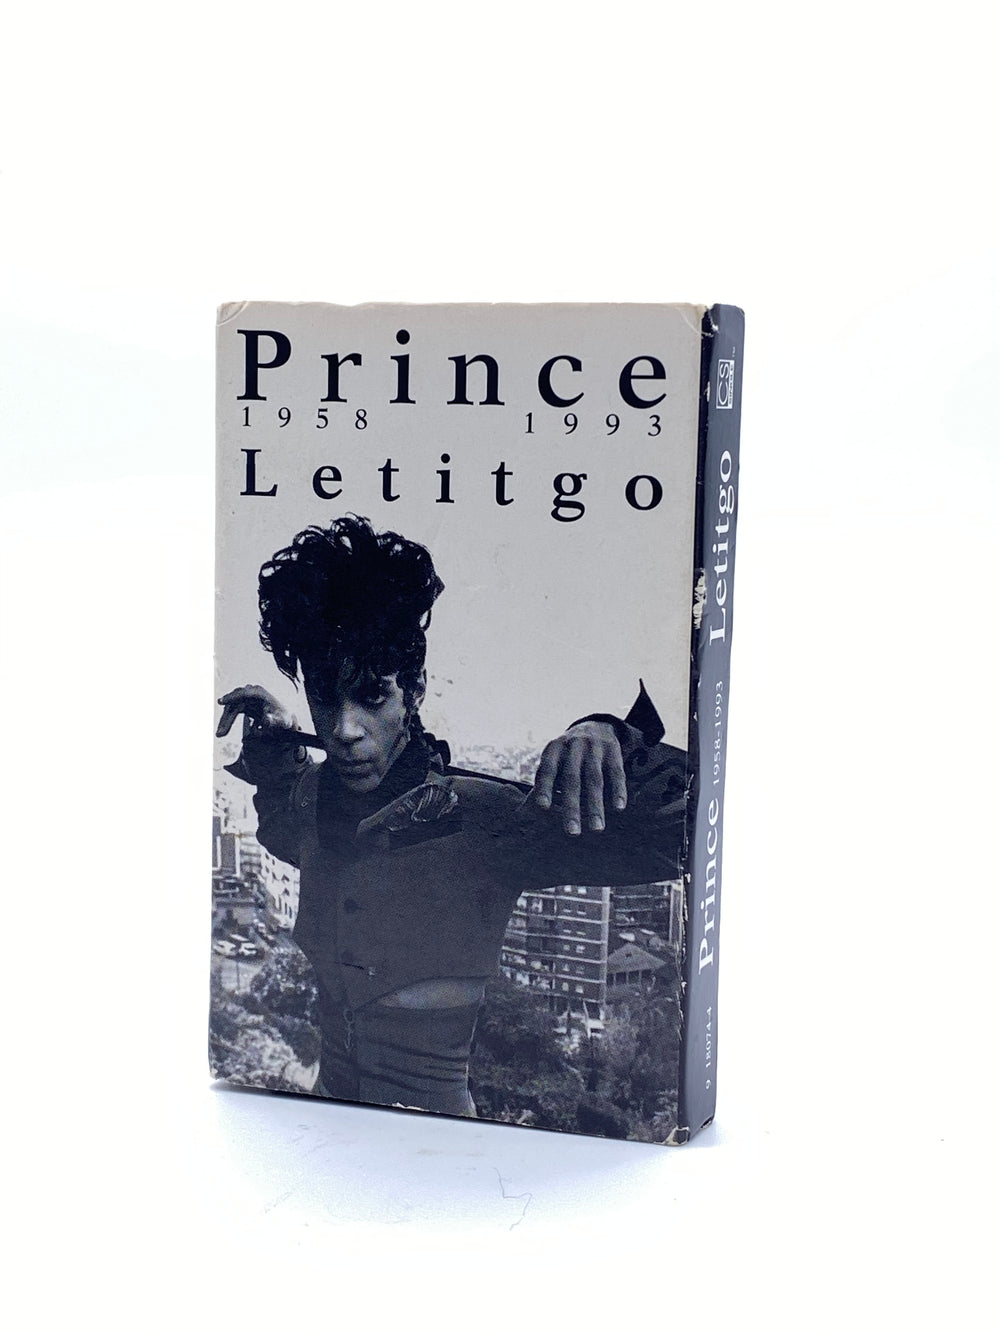 Prince Letitgo Solo Original Cassette Single Tape USA Release